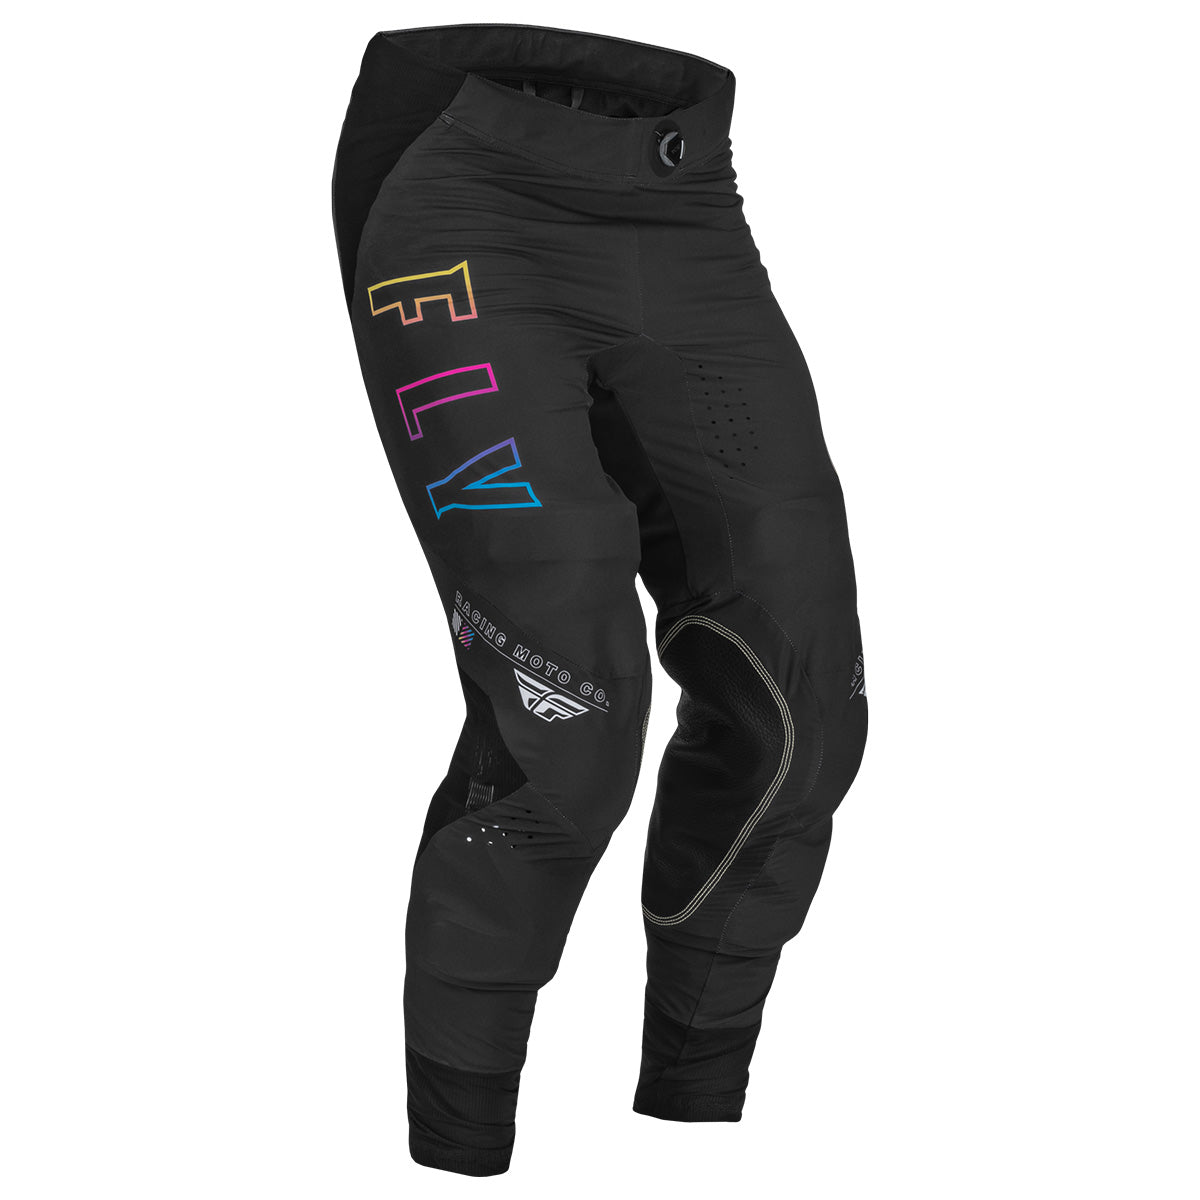 FLY Racing Men's Lite S.E. Avenge Pants - Black/Sunset 376-73530